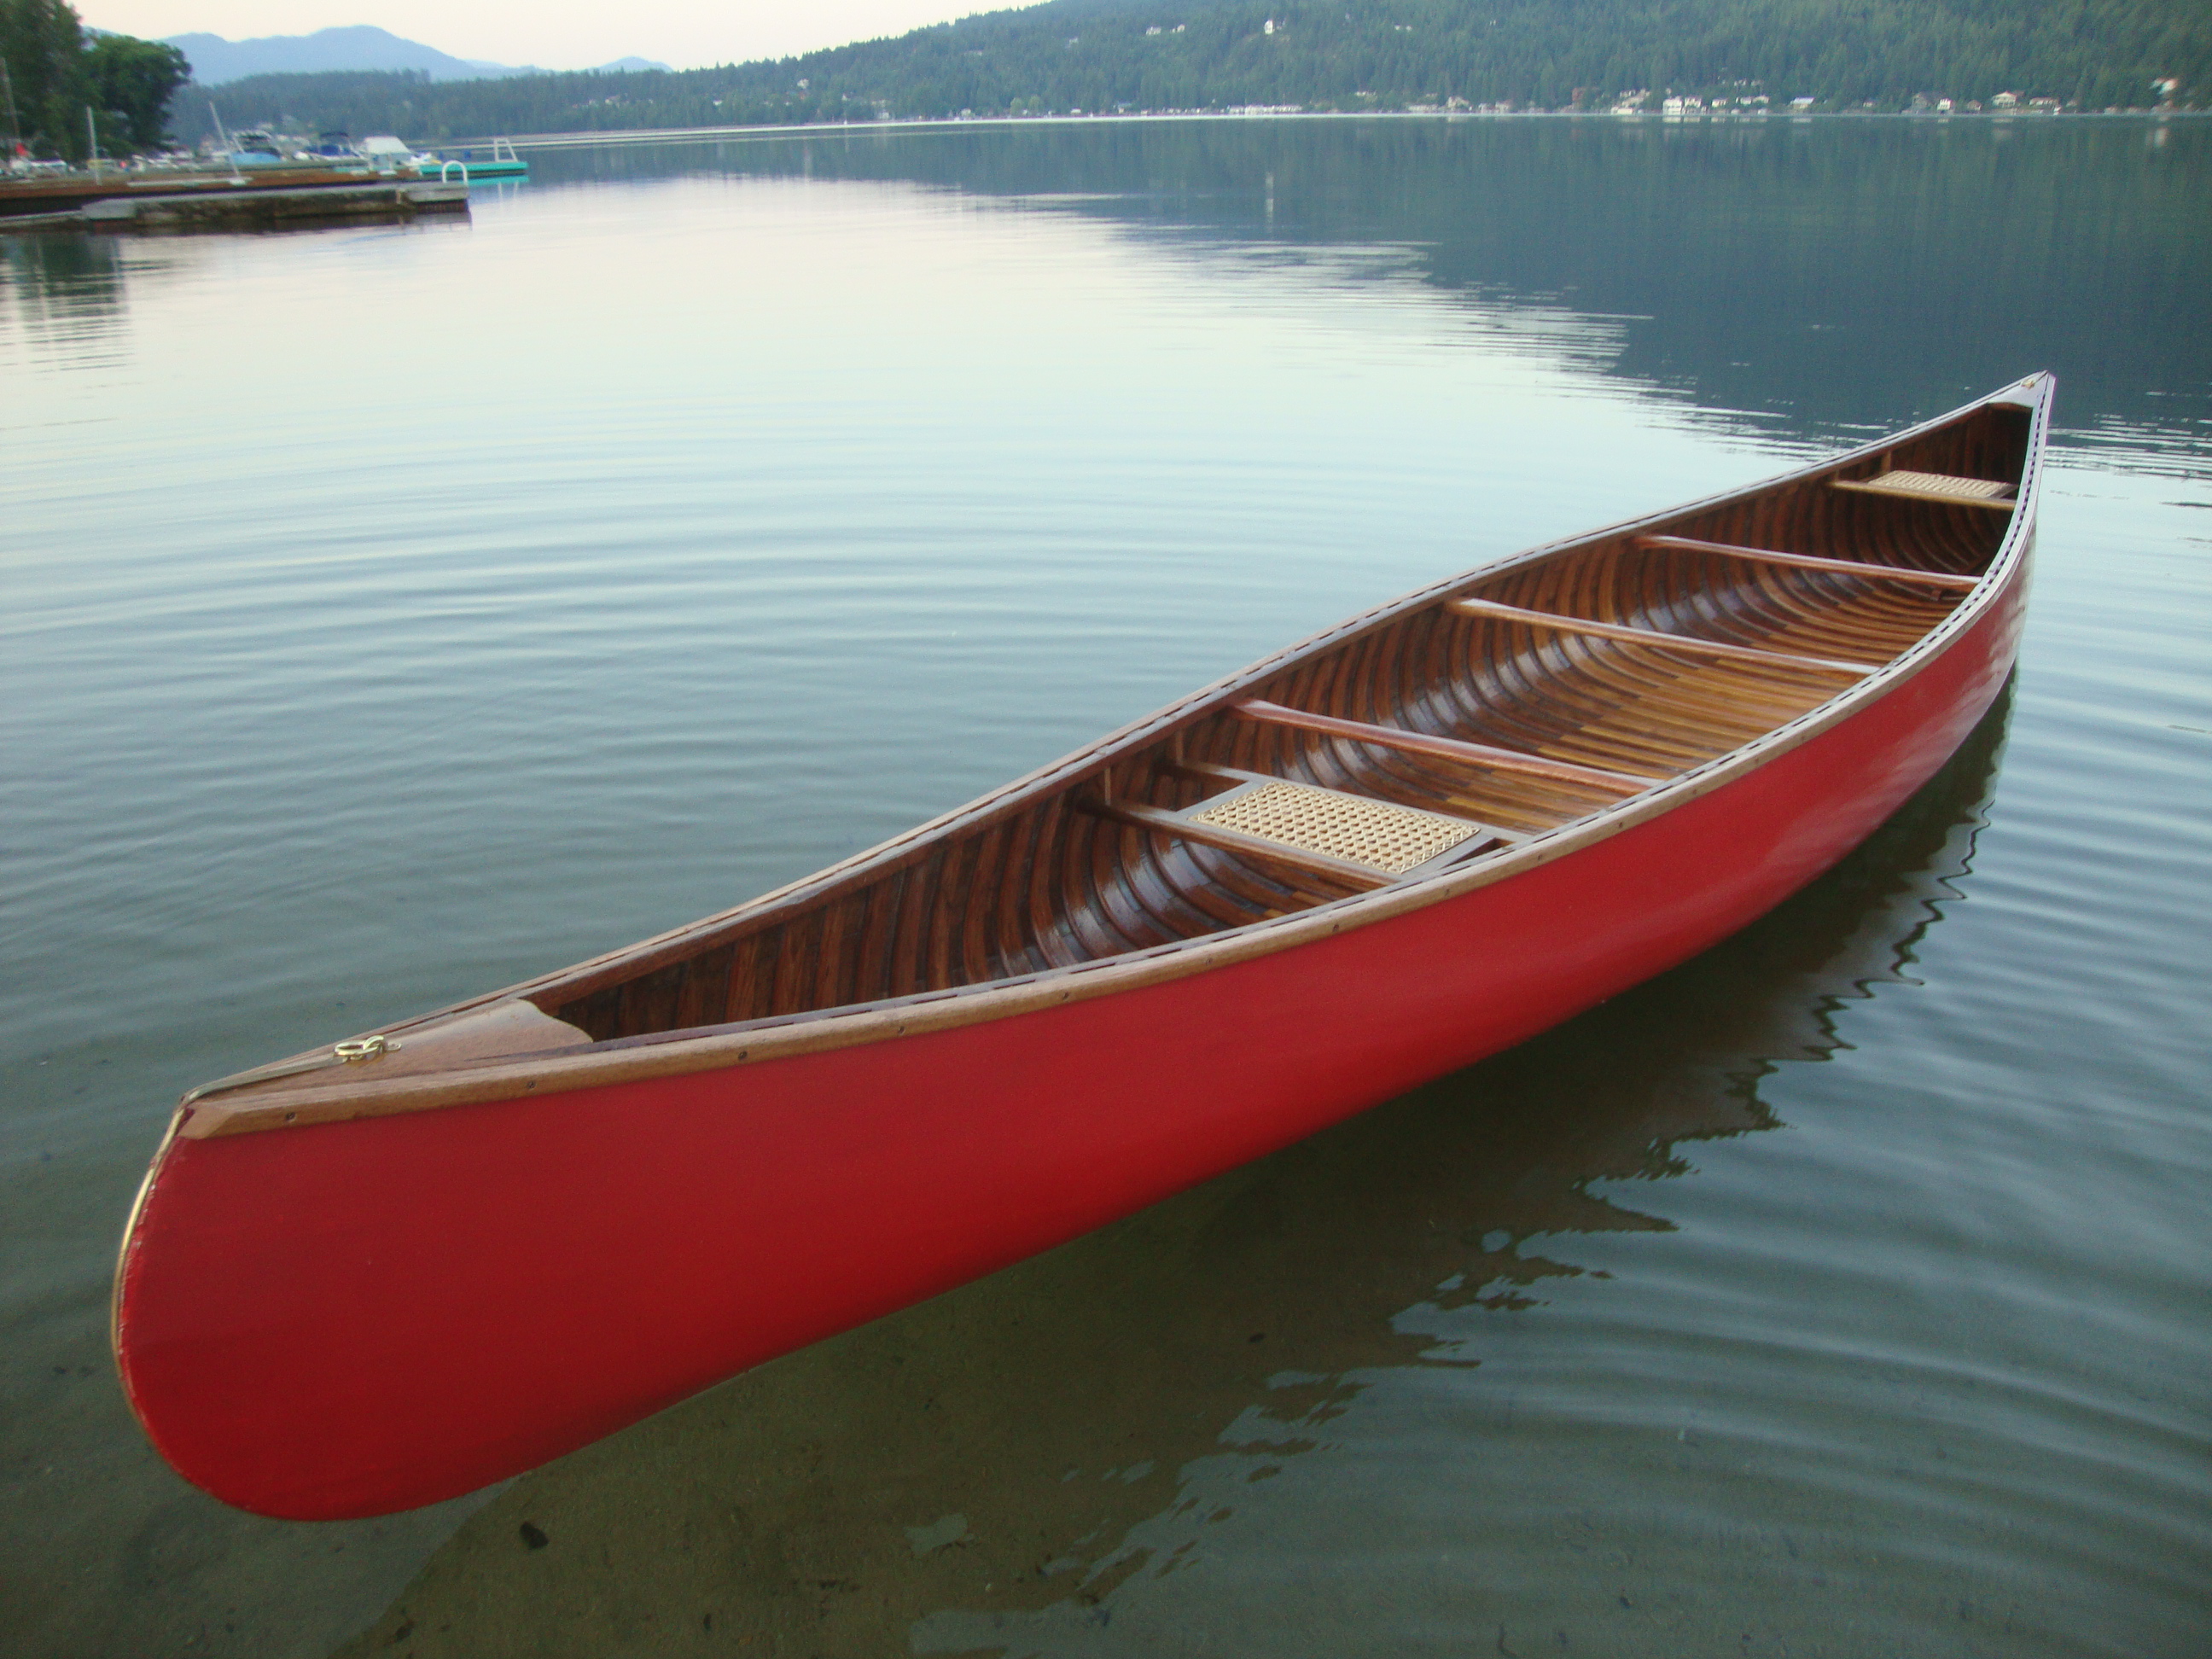 nerlana: next topic wooden canoe paddle repair